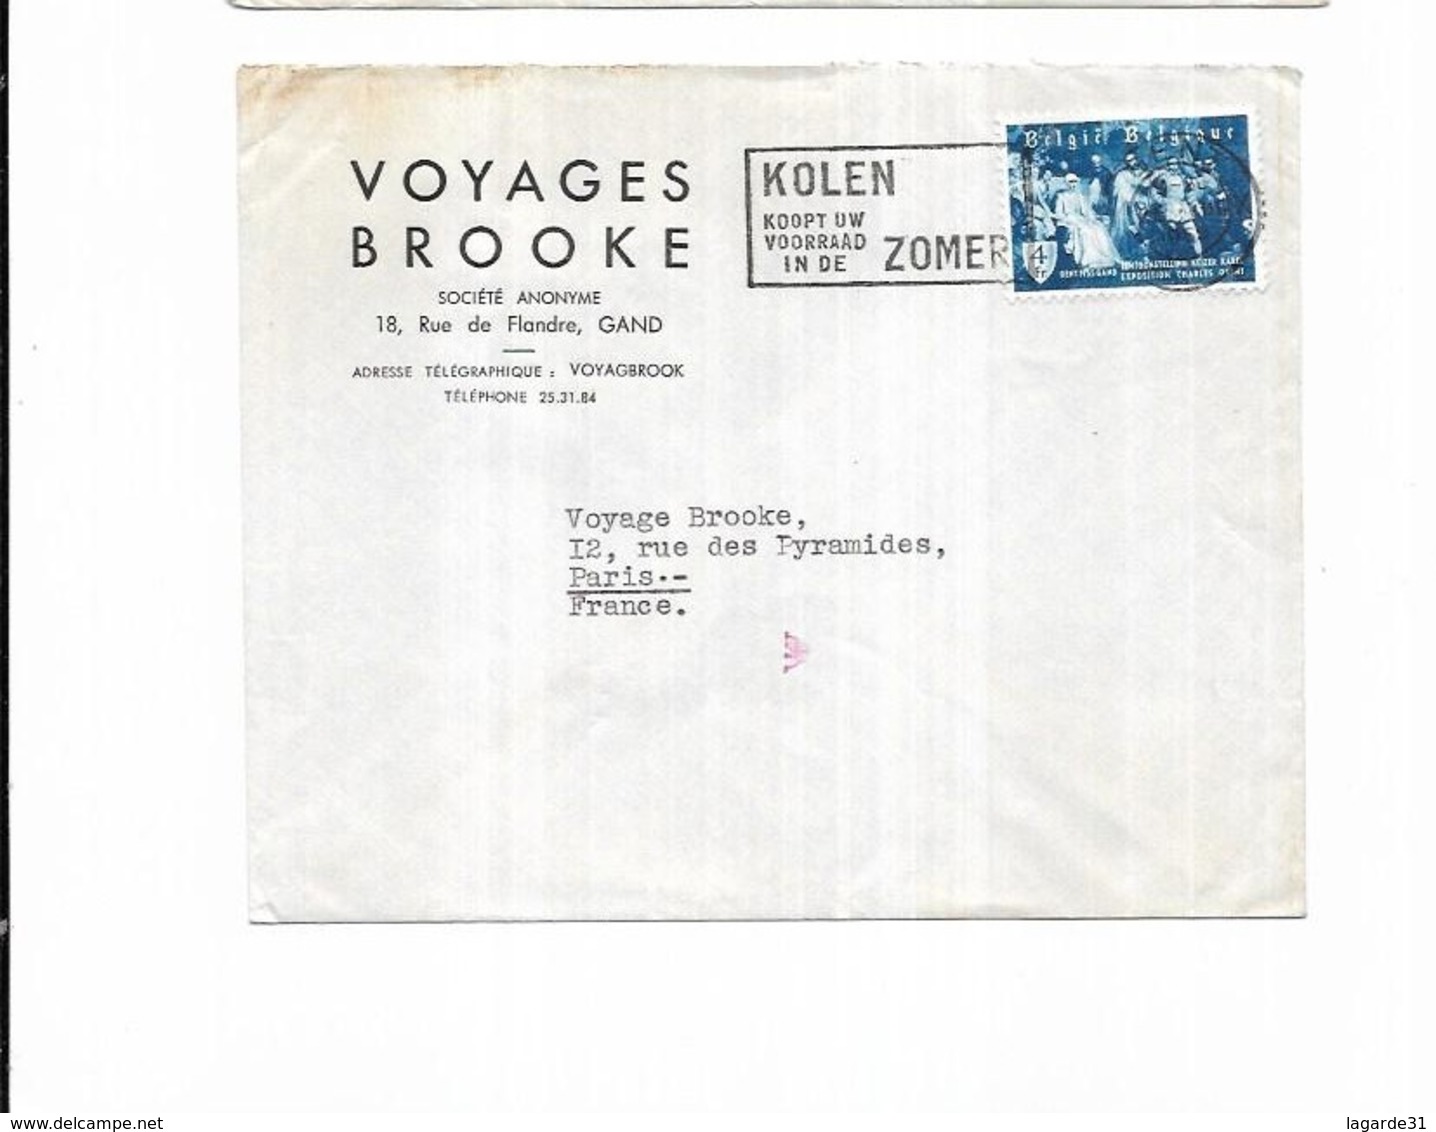 1955 Belgique Voyages Brooke Gand KOLEN KOOPT UW VOORRAAD IN DE ZOMER - Vlagstempels